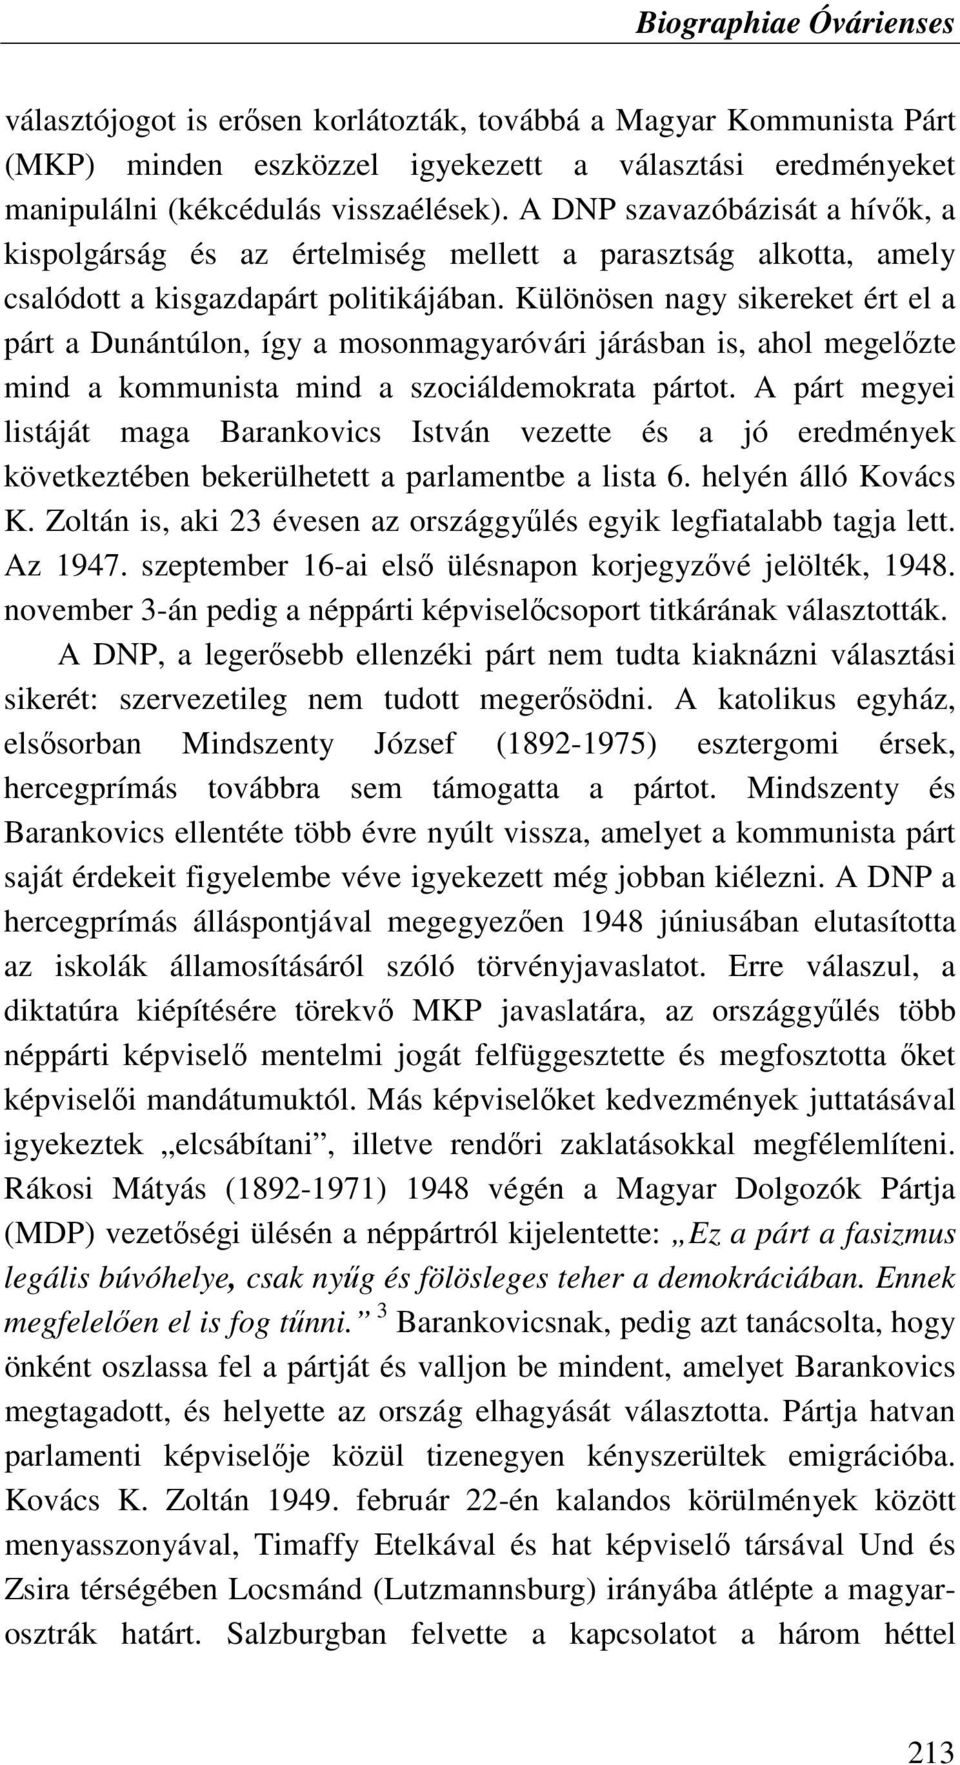 Különösen nagy sikereket ért el a párt a Dunántúlon, így a mosonmagyaróvári járásban is, ahol megelızte mind a kommunista mind a szociáldemokrata pártot.